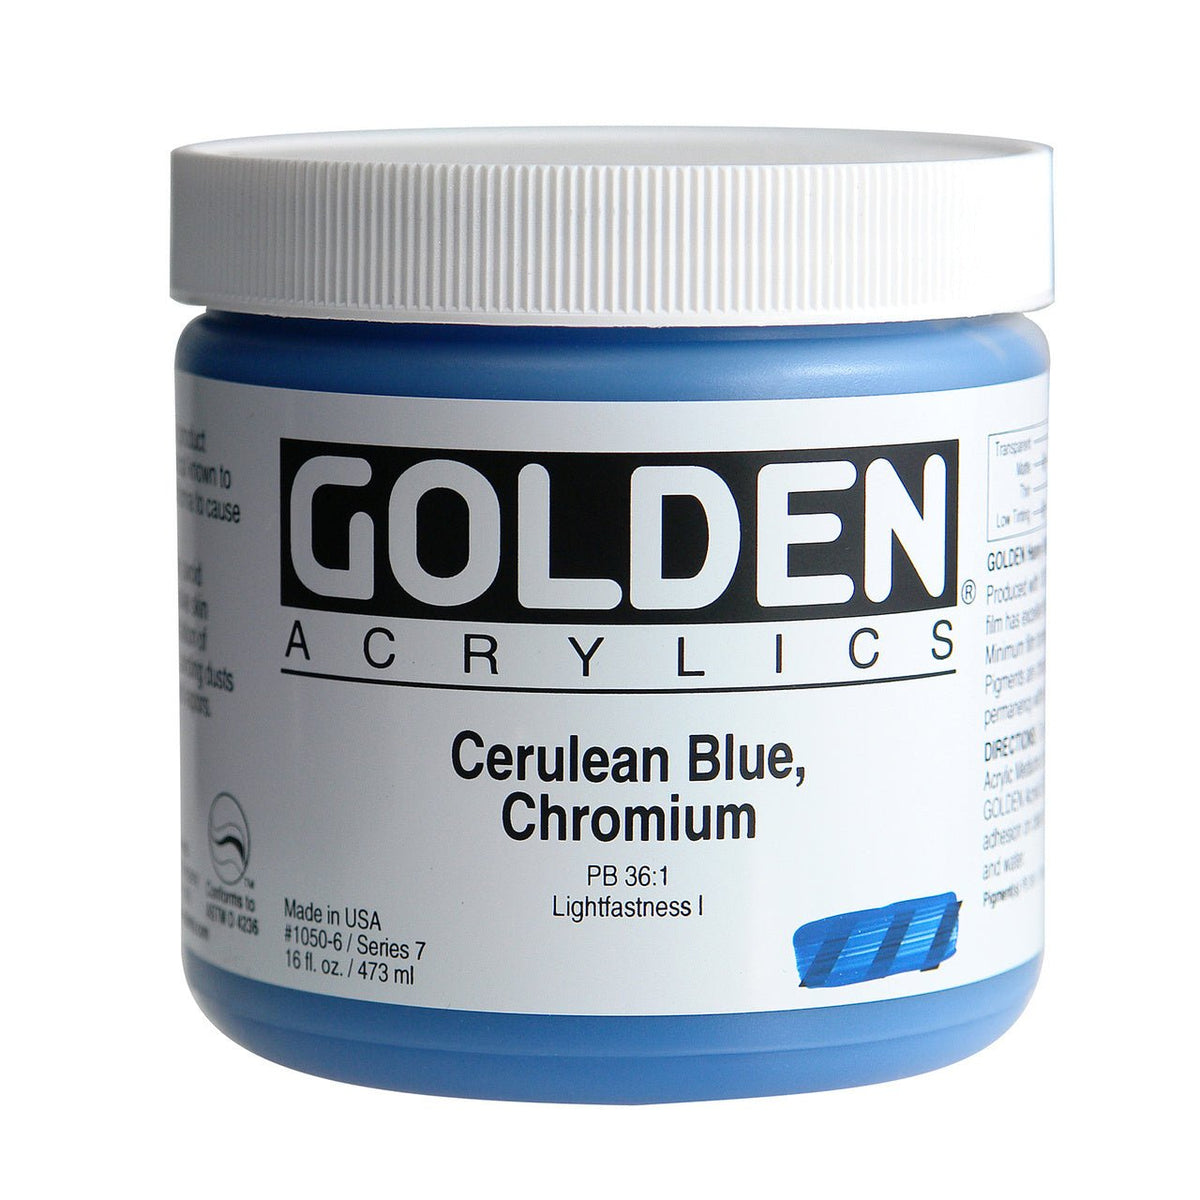 Golden Heavy Body Acrylic Cerulean Blue Chromium 16 oz - merriartist.com